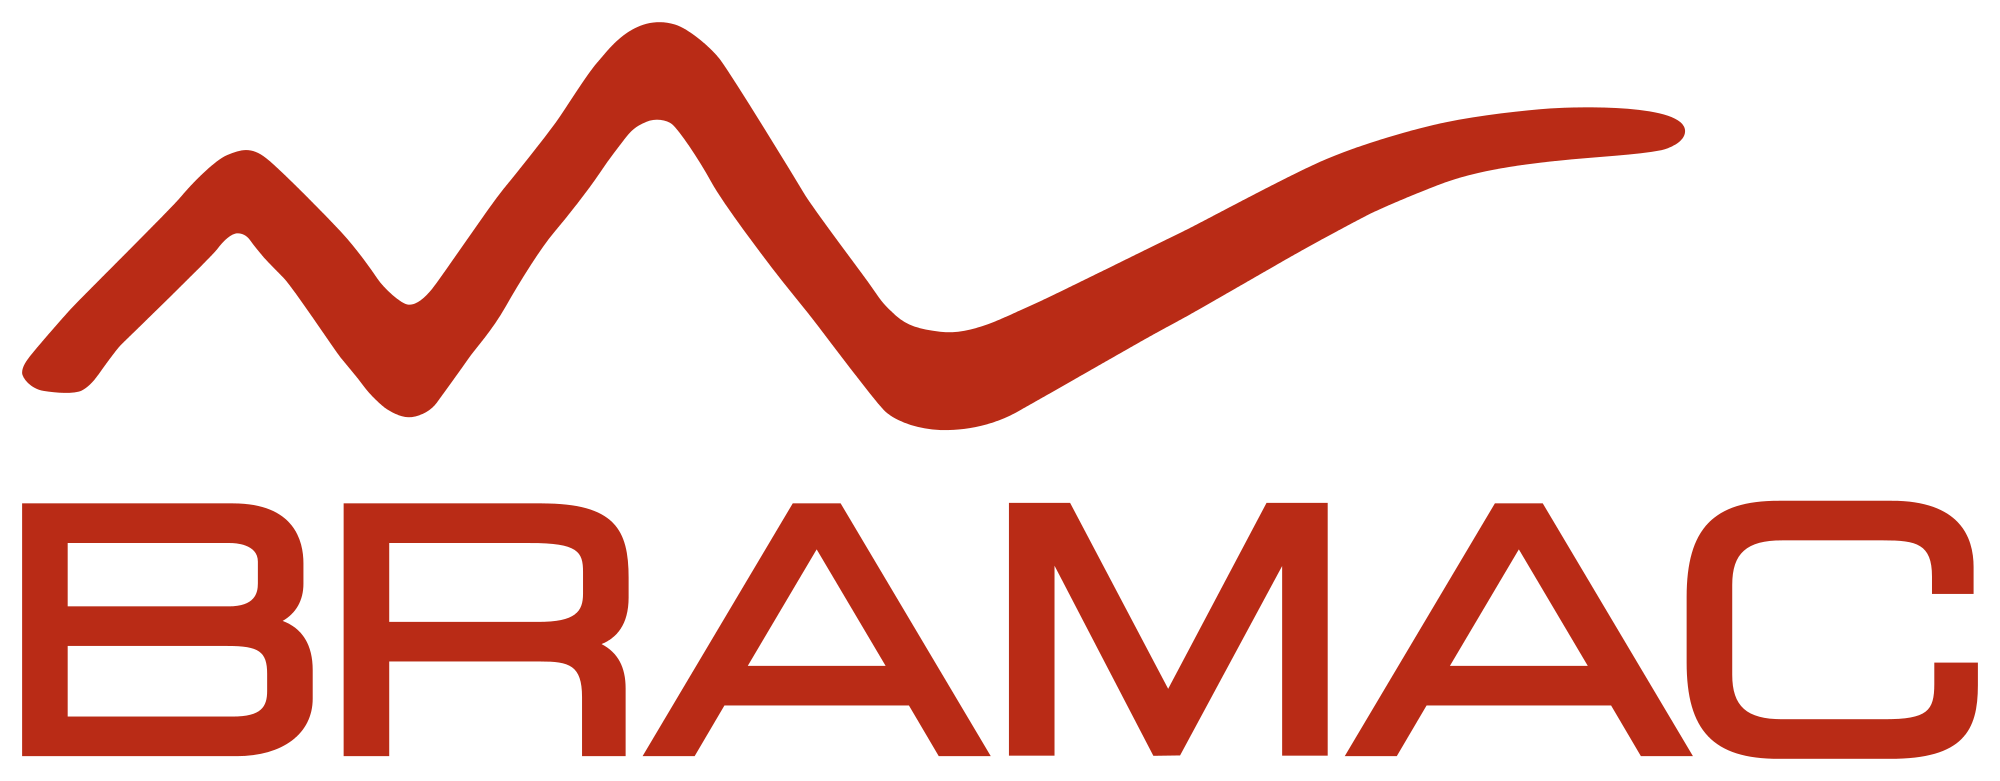 Bramac logo.svg